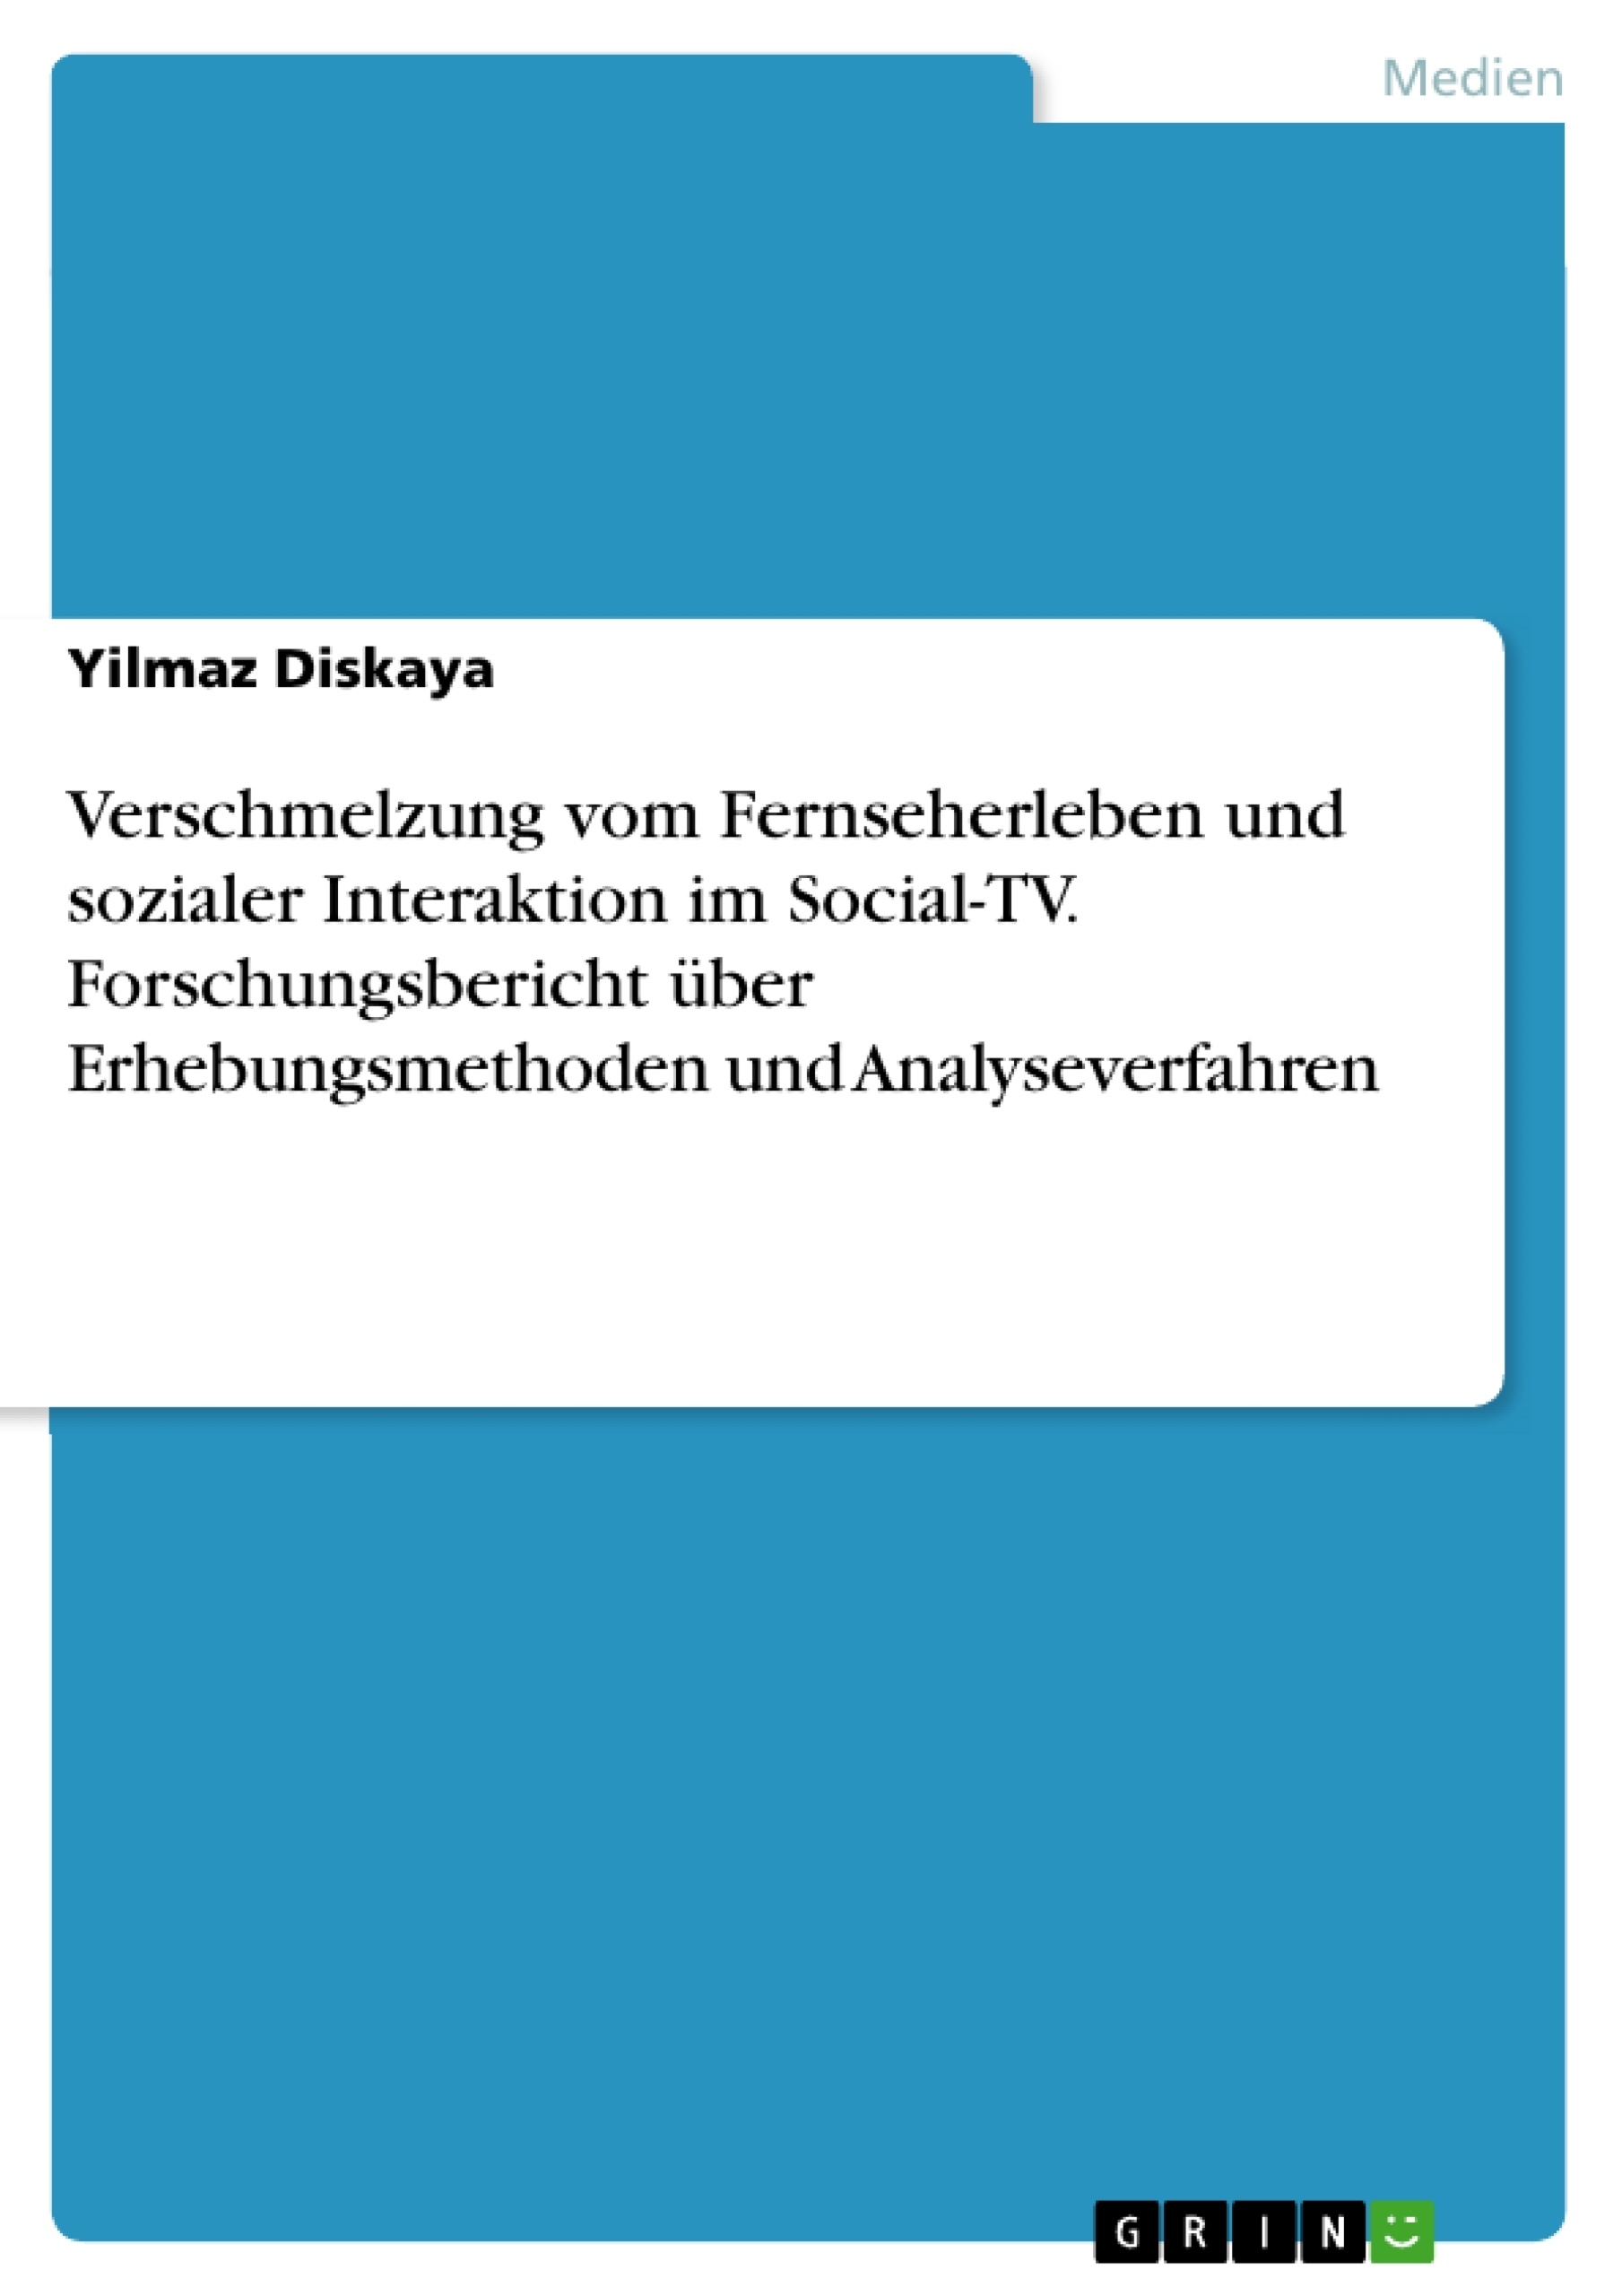 Titre: Verschmelzung vom Fernseherleben und sozialer Interaktion im Social-TV. Forschungsbericht über Erhebungsmethoden und Analyseverfahren